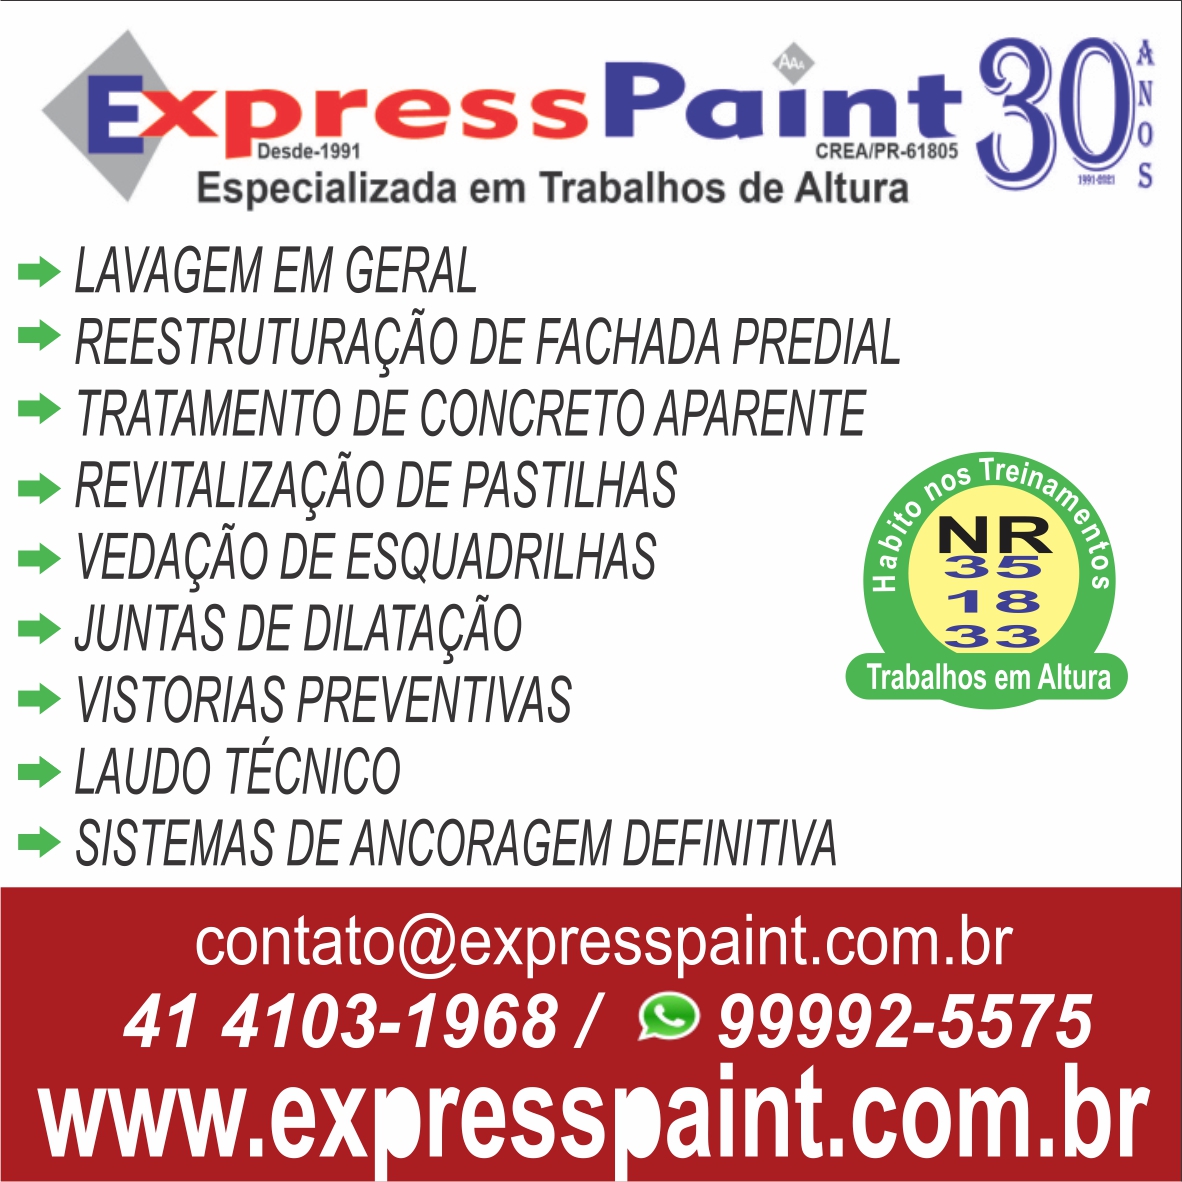 express paint